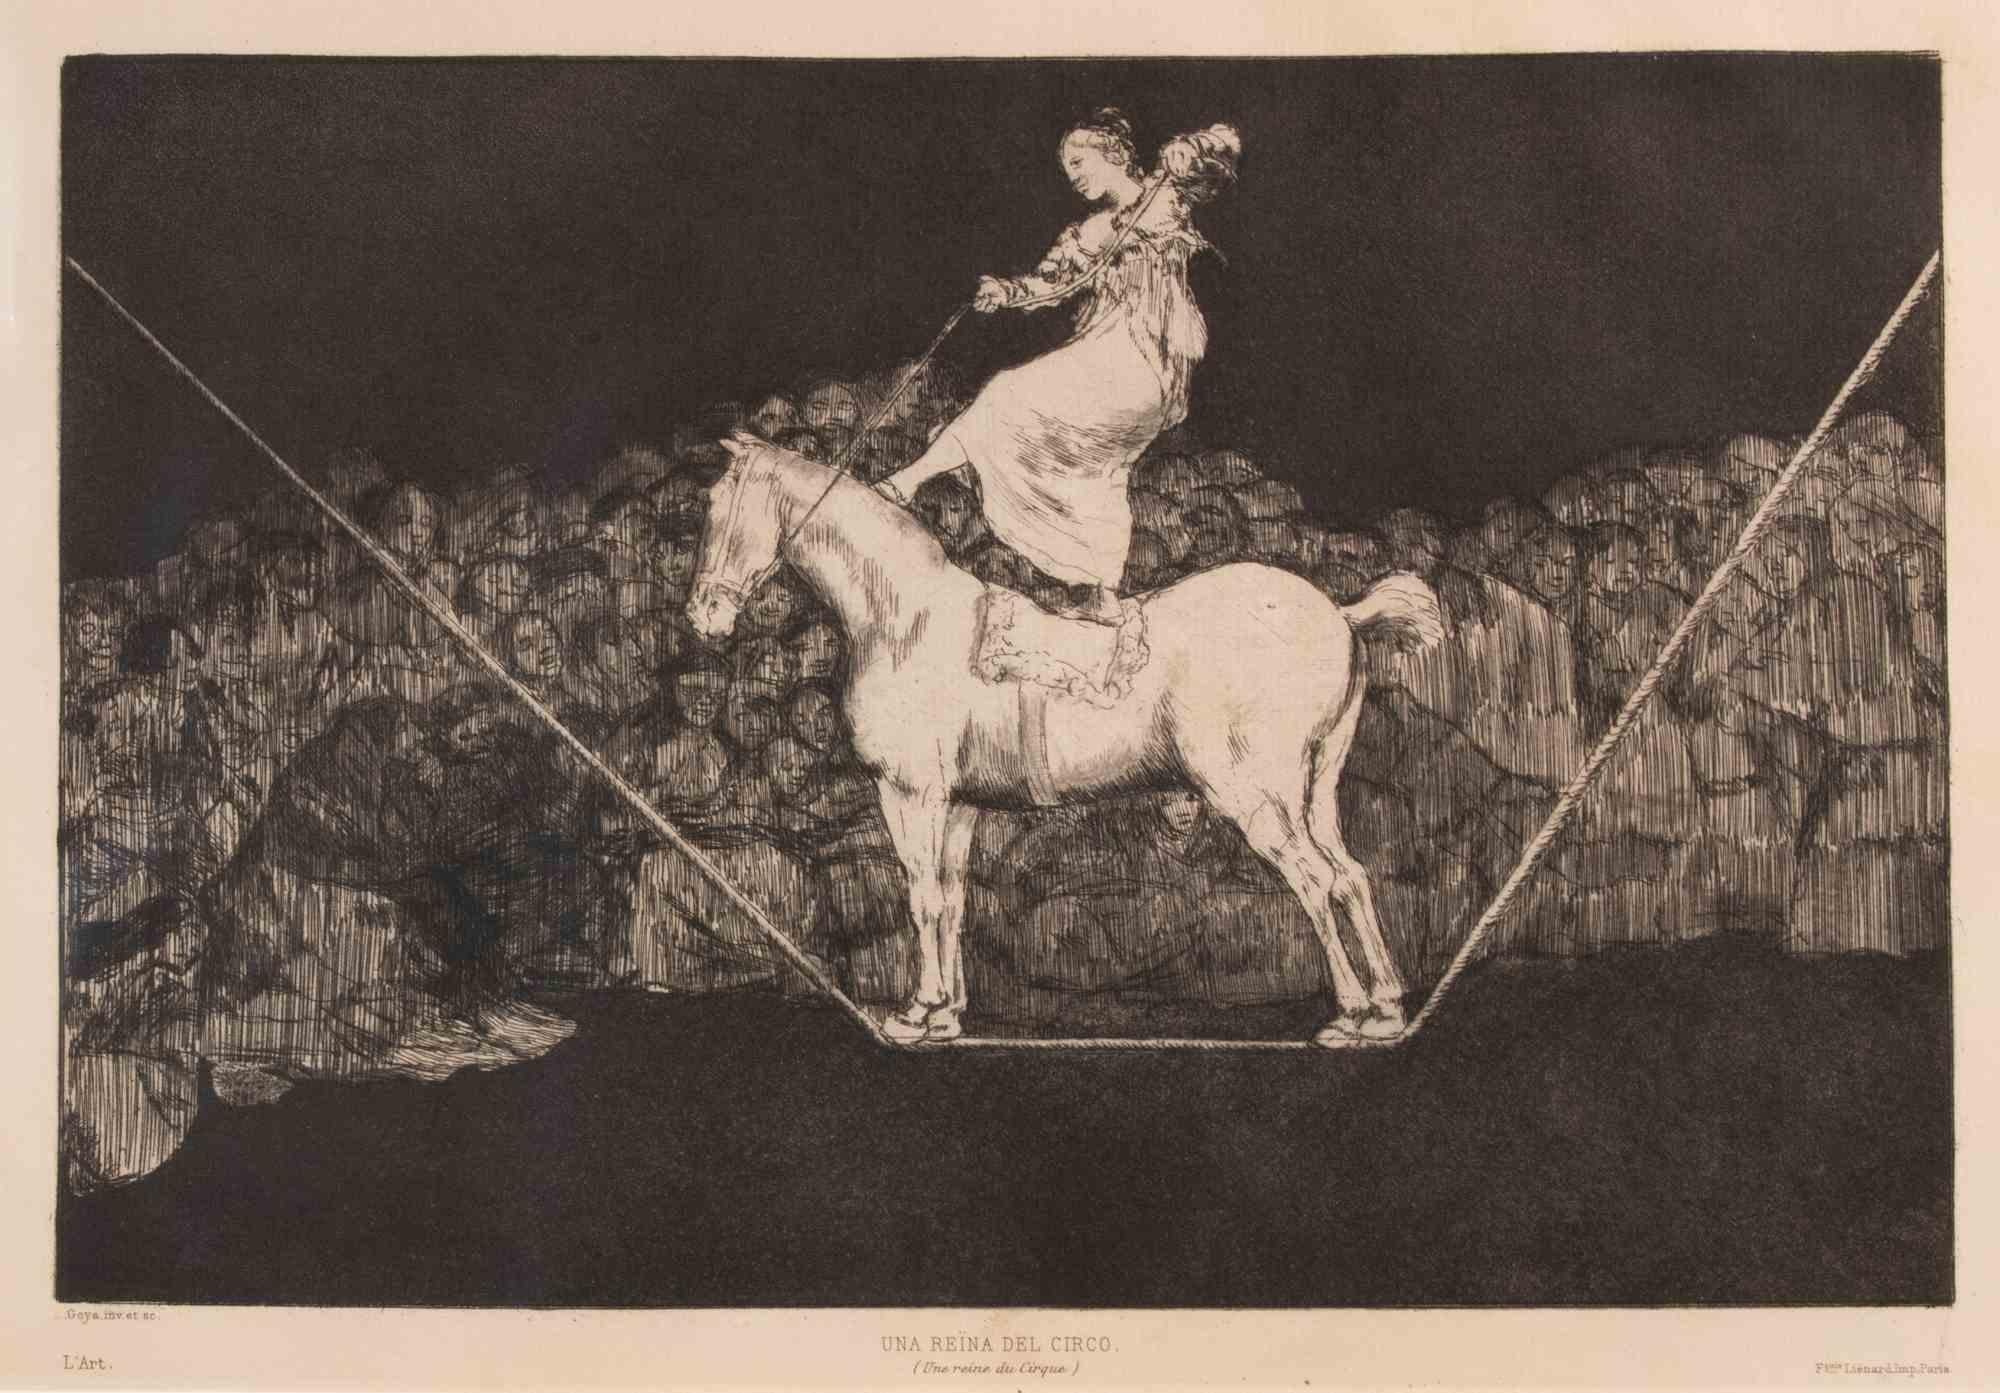 Una Reina del Circo est une œuvre d'art moderne réalisée par Francisco Goya.

Eau-forte et aquatinte, de la série "Los Proverbios", réalisée en 1815.

Cet exemplaire appartient à l'édition de "L'Art", publiée en 1877.

Très bon état.